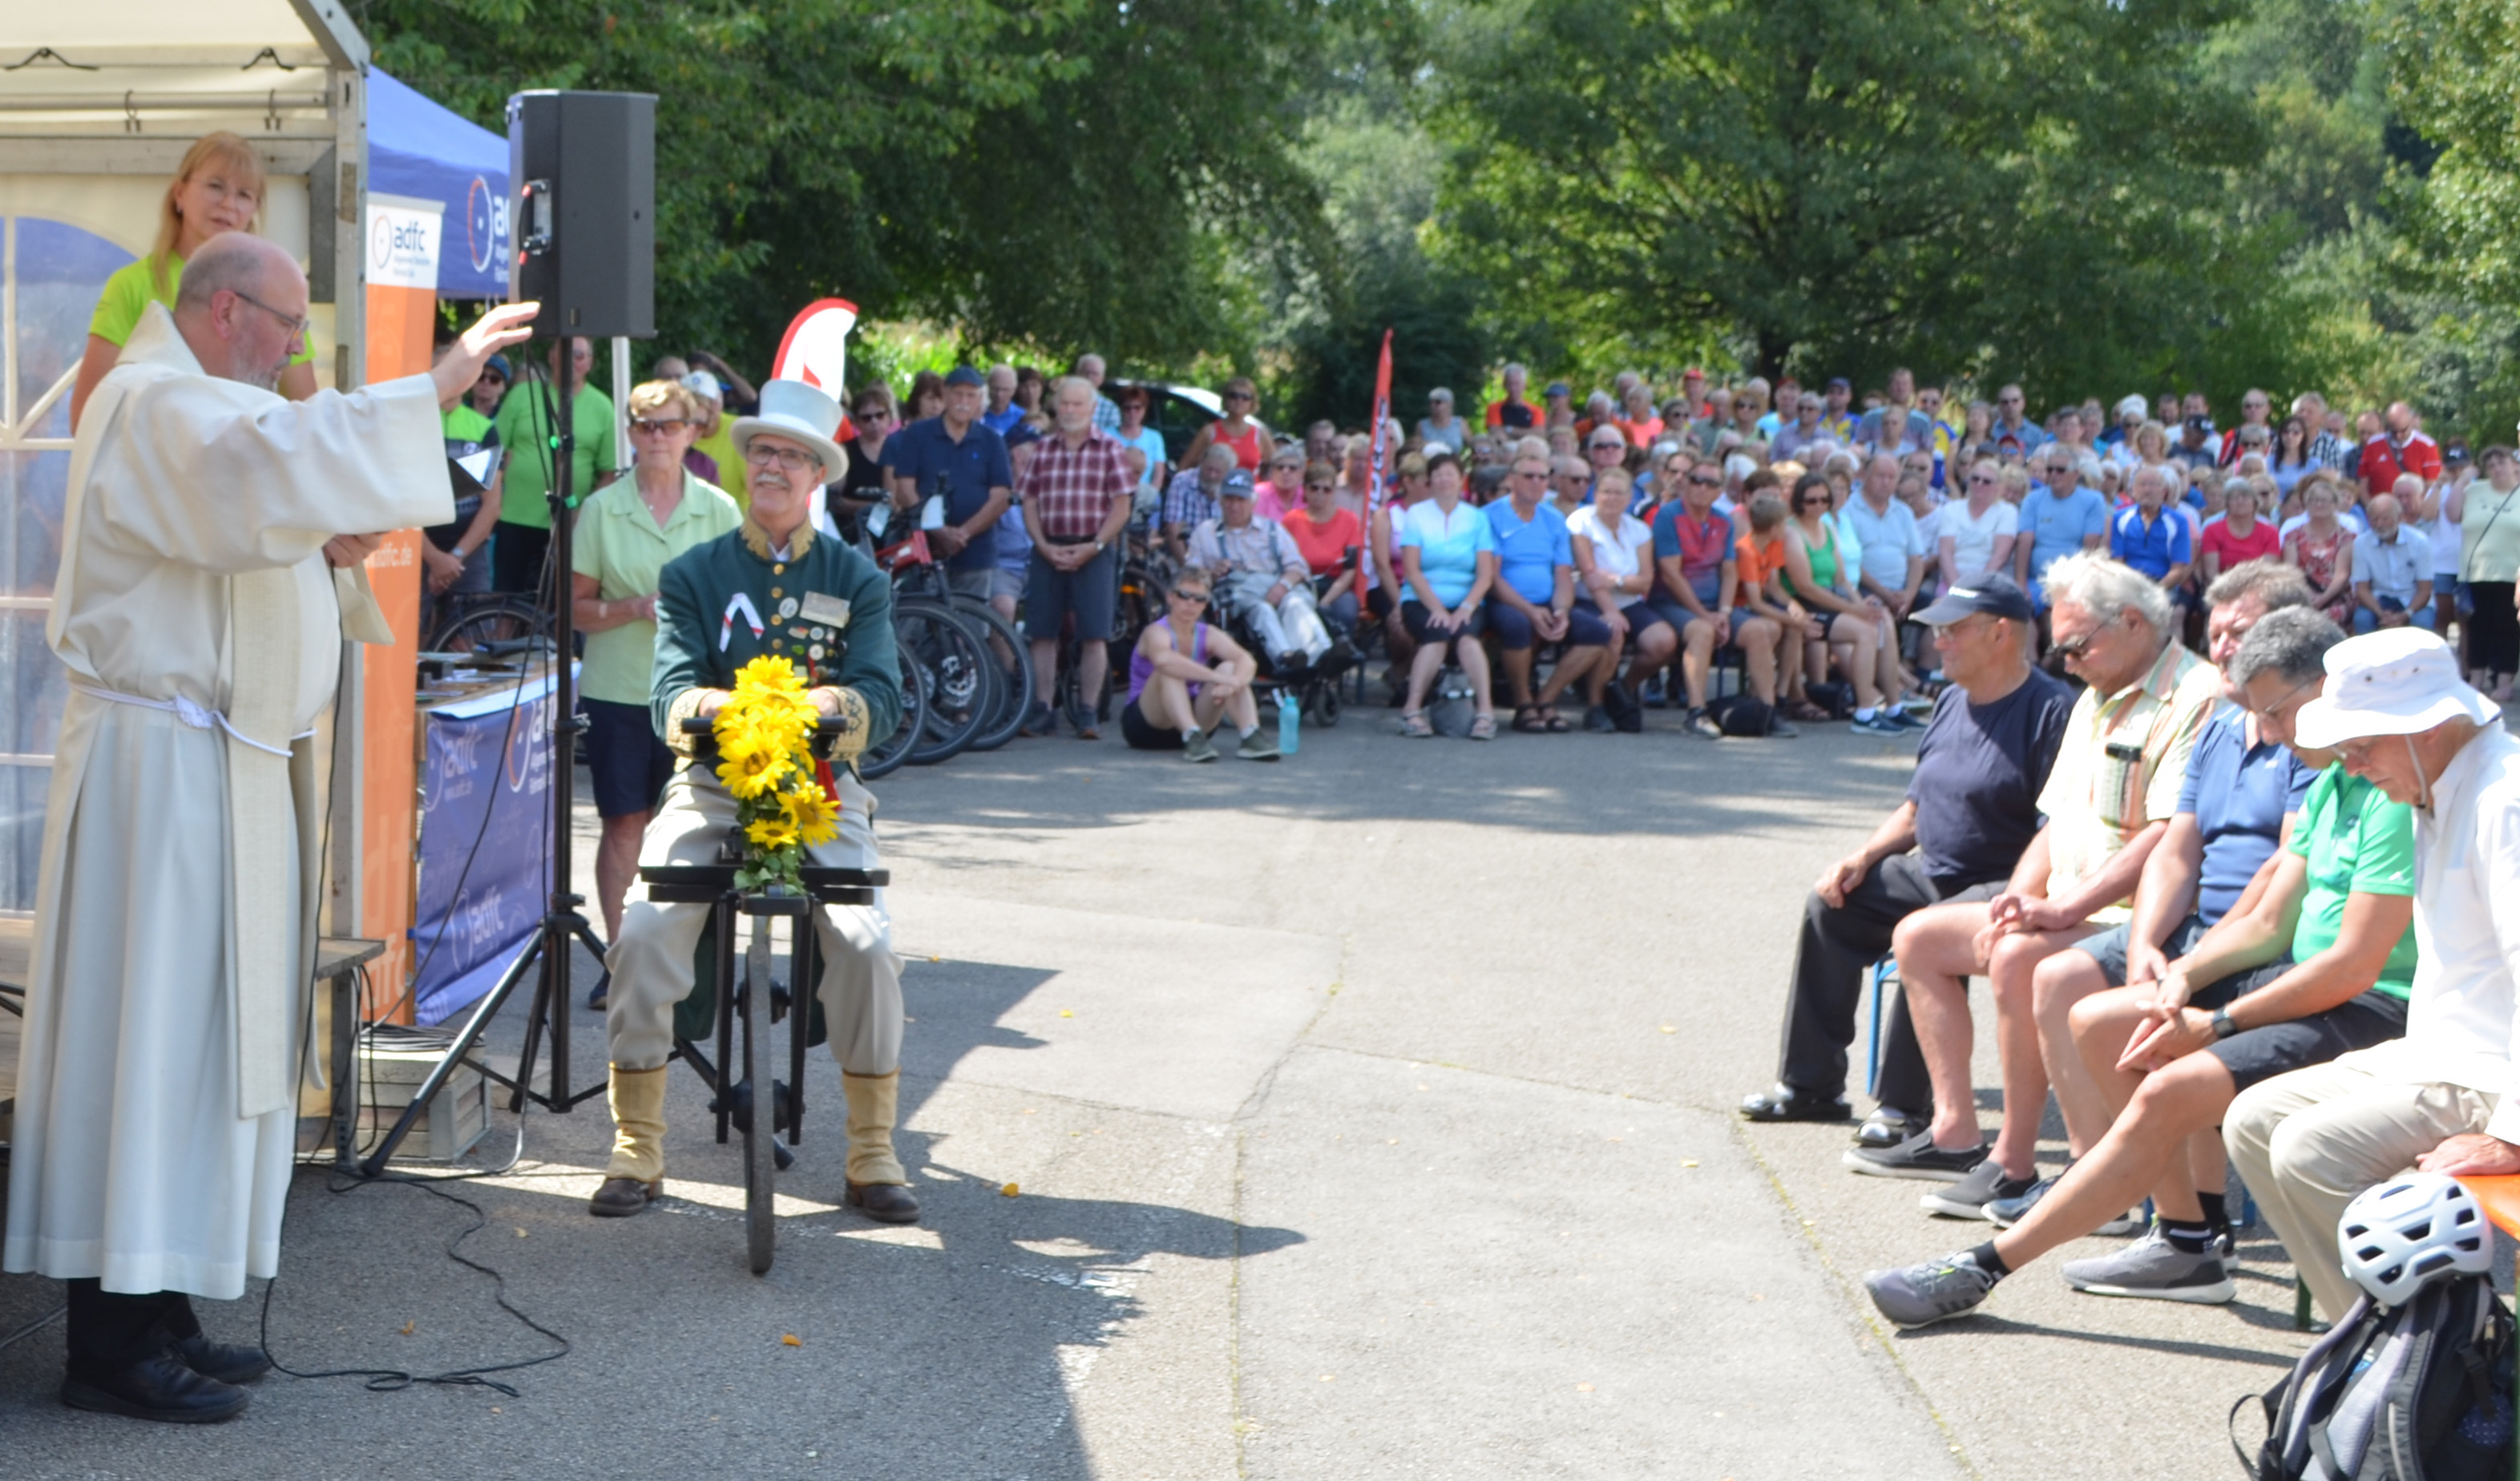 Links im Bild ein katholischer Pater, daneben sitzt ein Herr auf einem historischen Fahrrad, im Hintergrund sind viele Menschen zu sehen. 